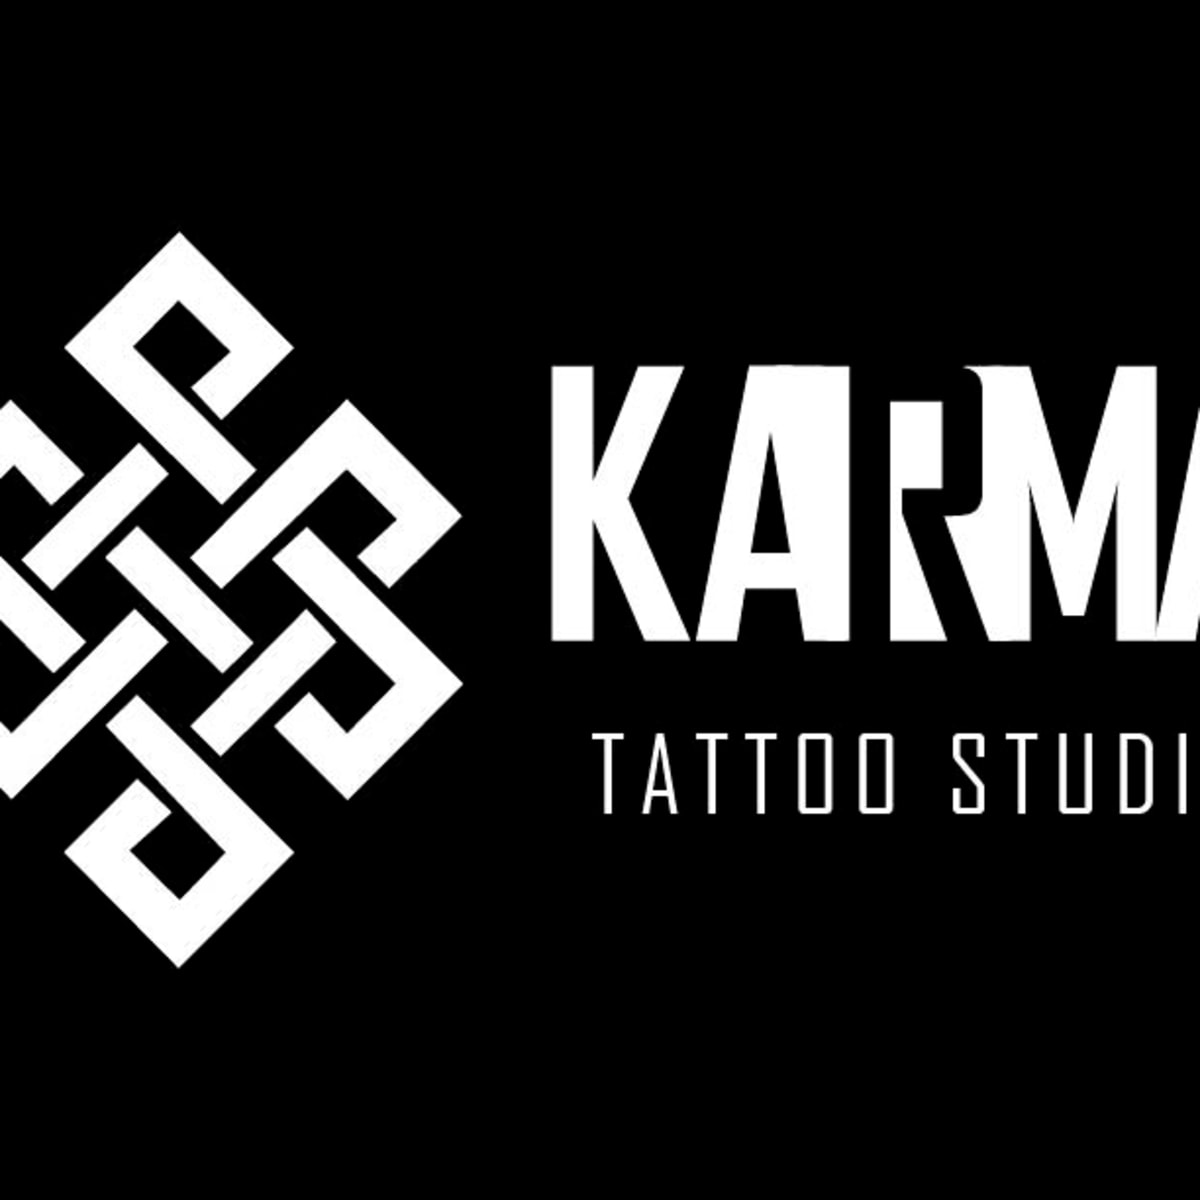 Aggregate 89 about karma sanskrit tattoo best  indaotaonec